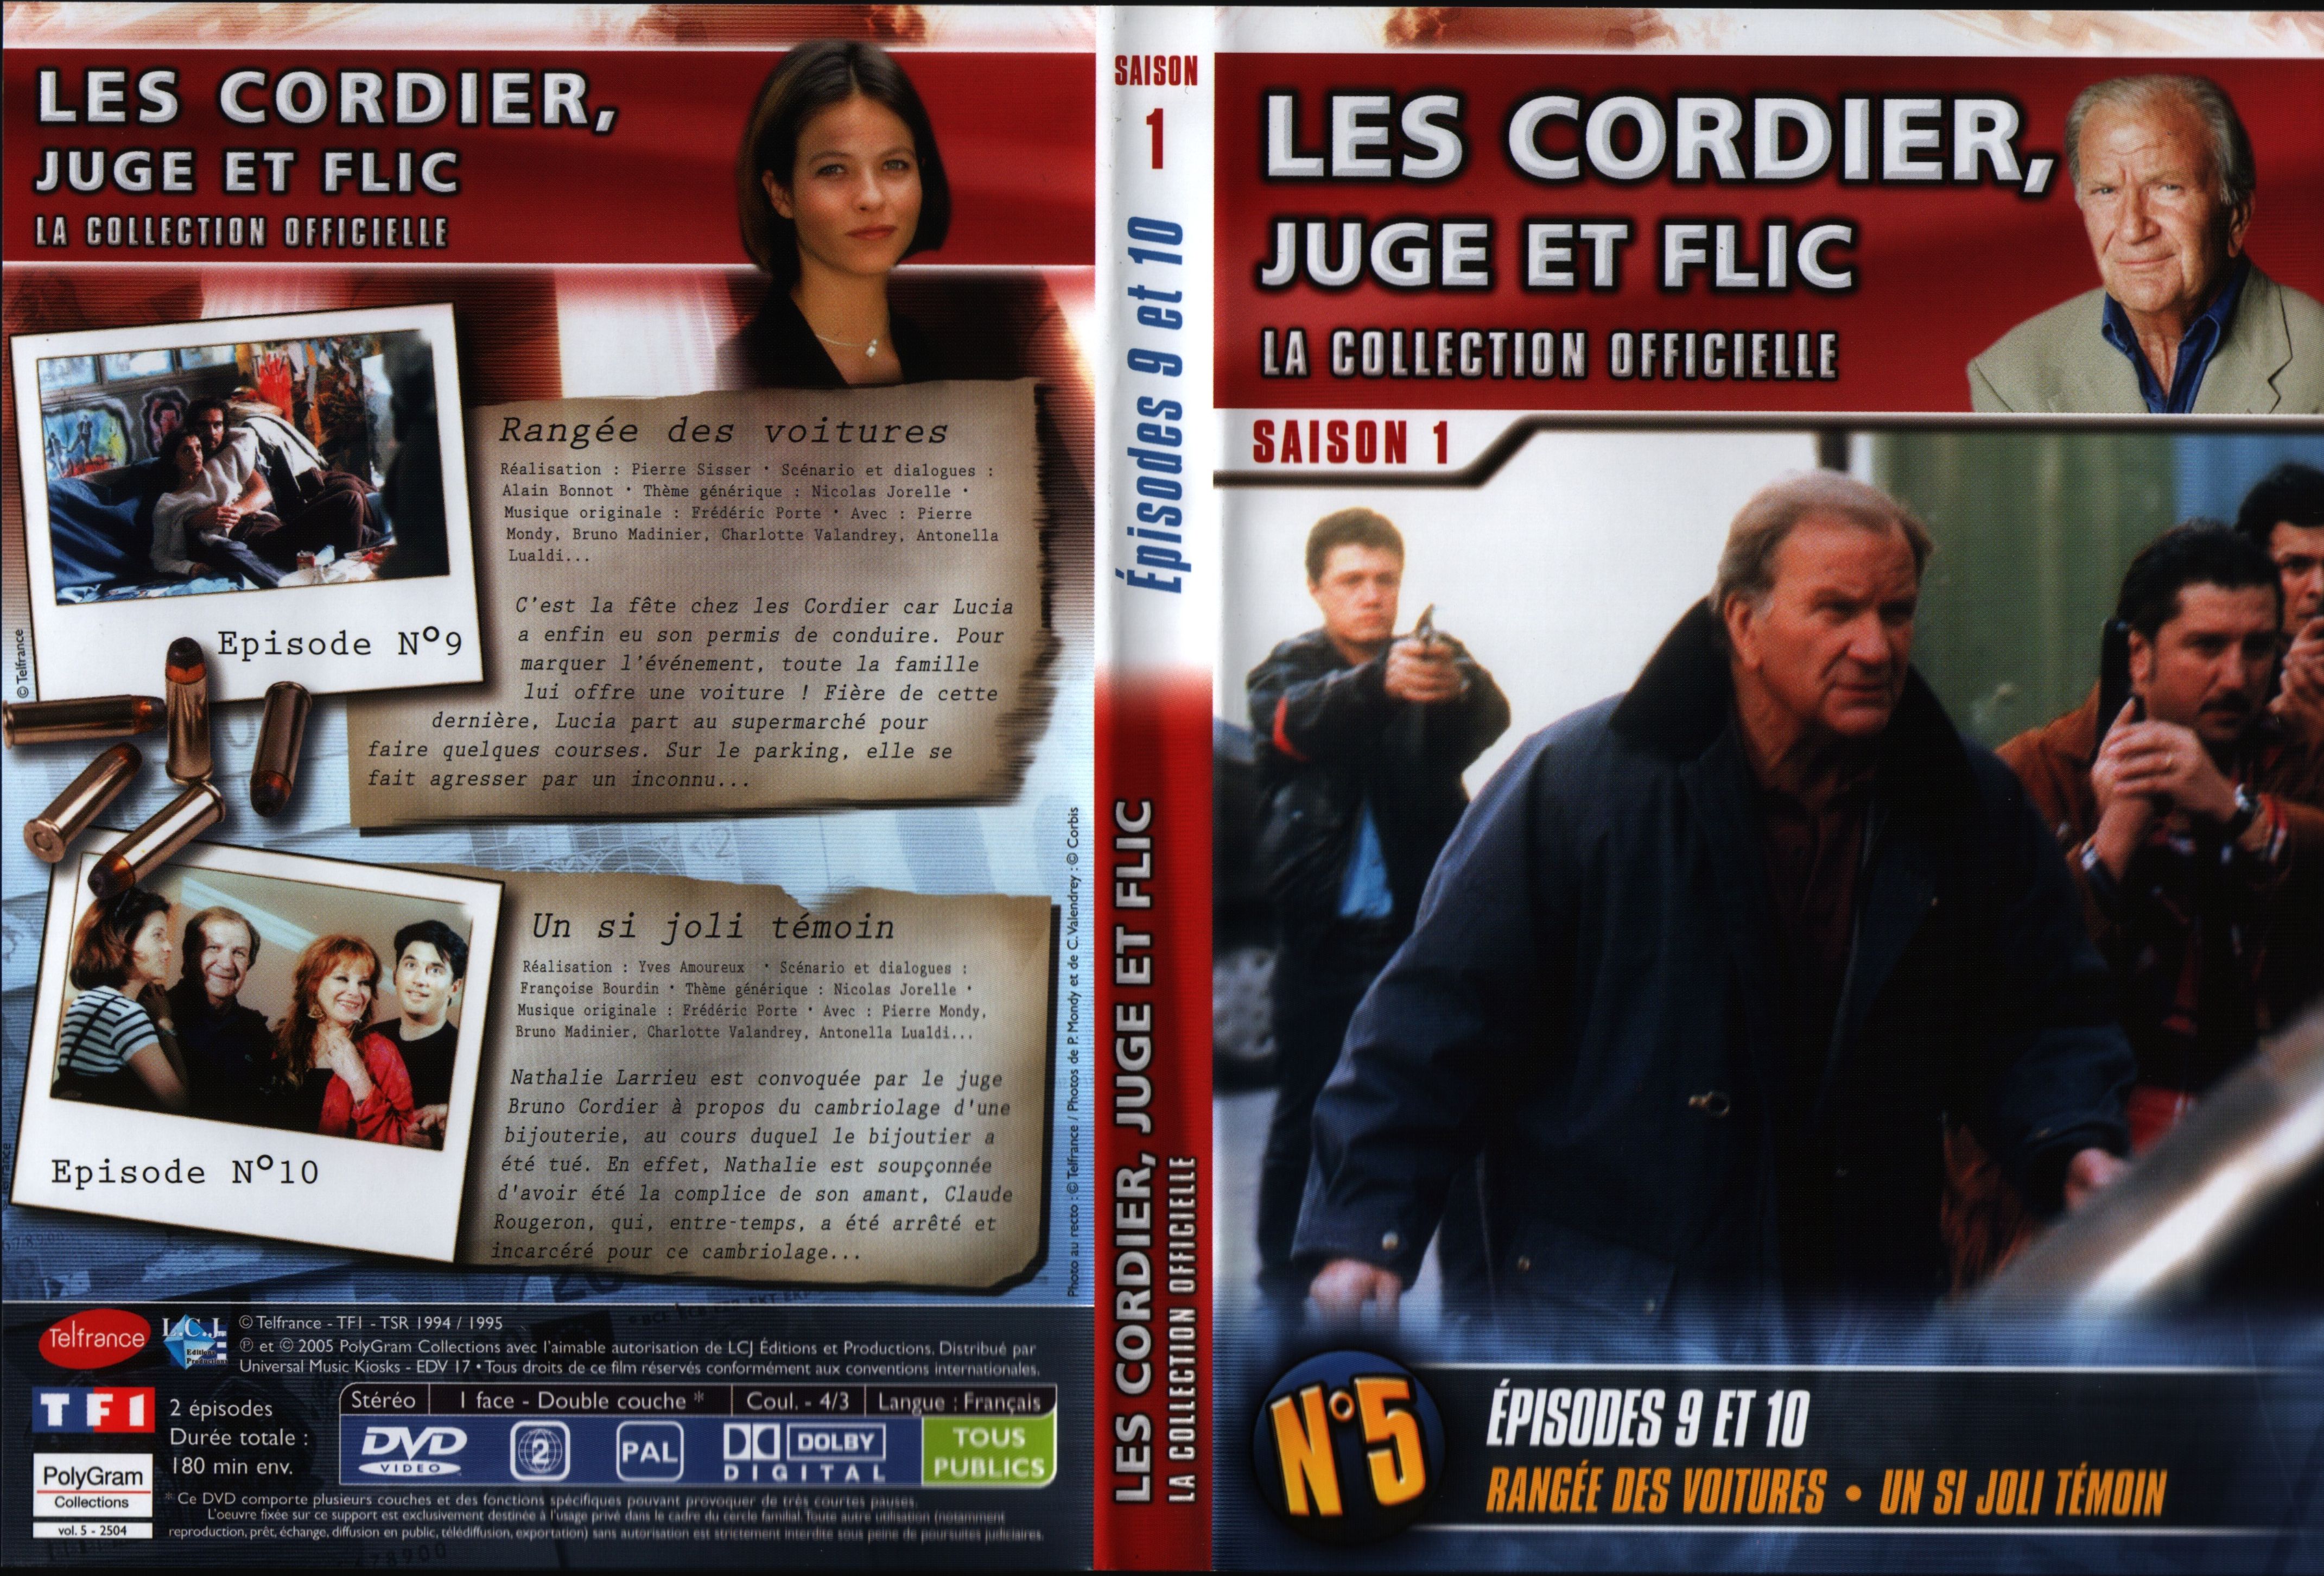 Jaquette DVD Les cordier juge et flic Saison 1 vol 5